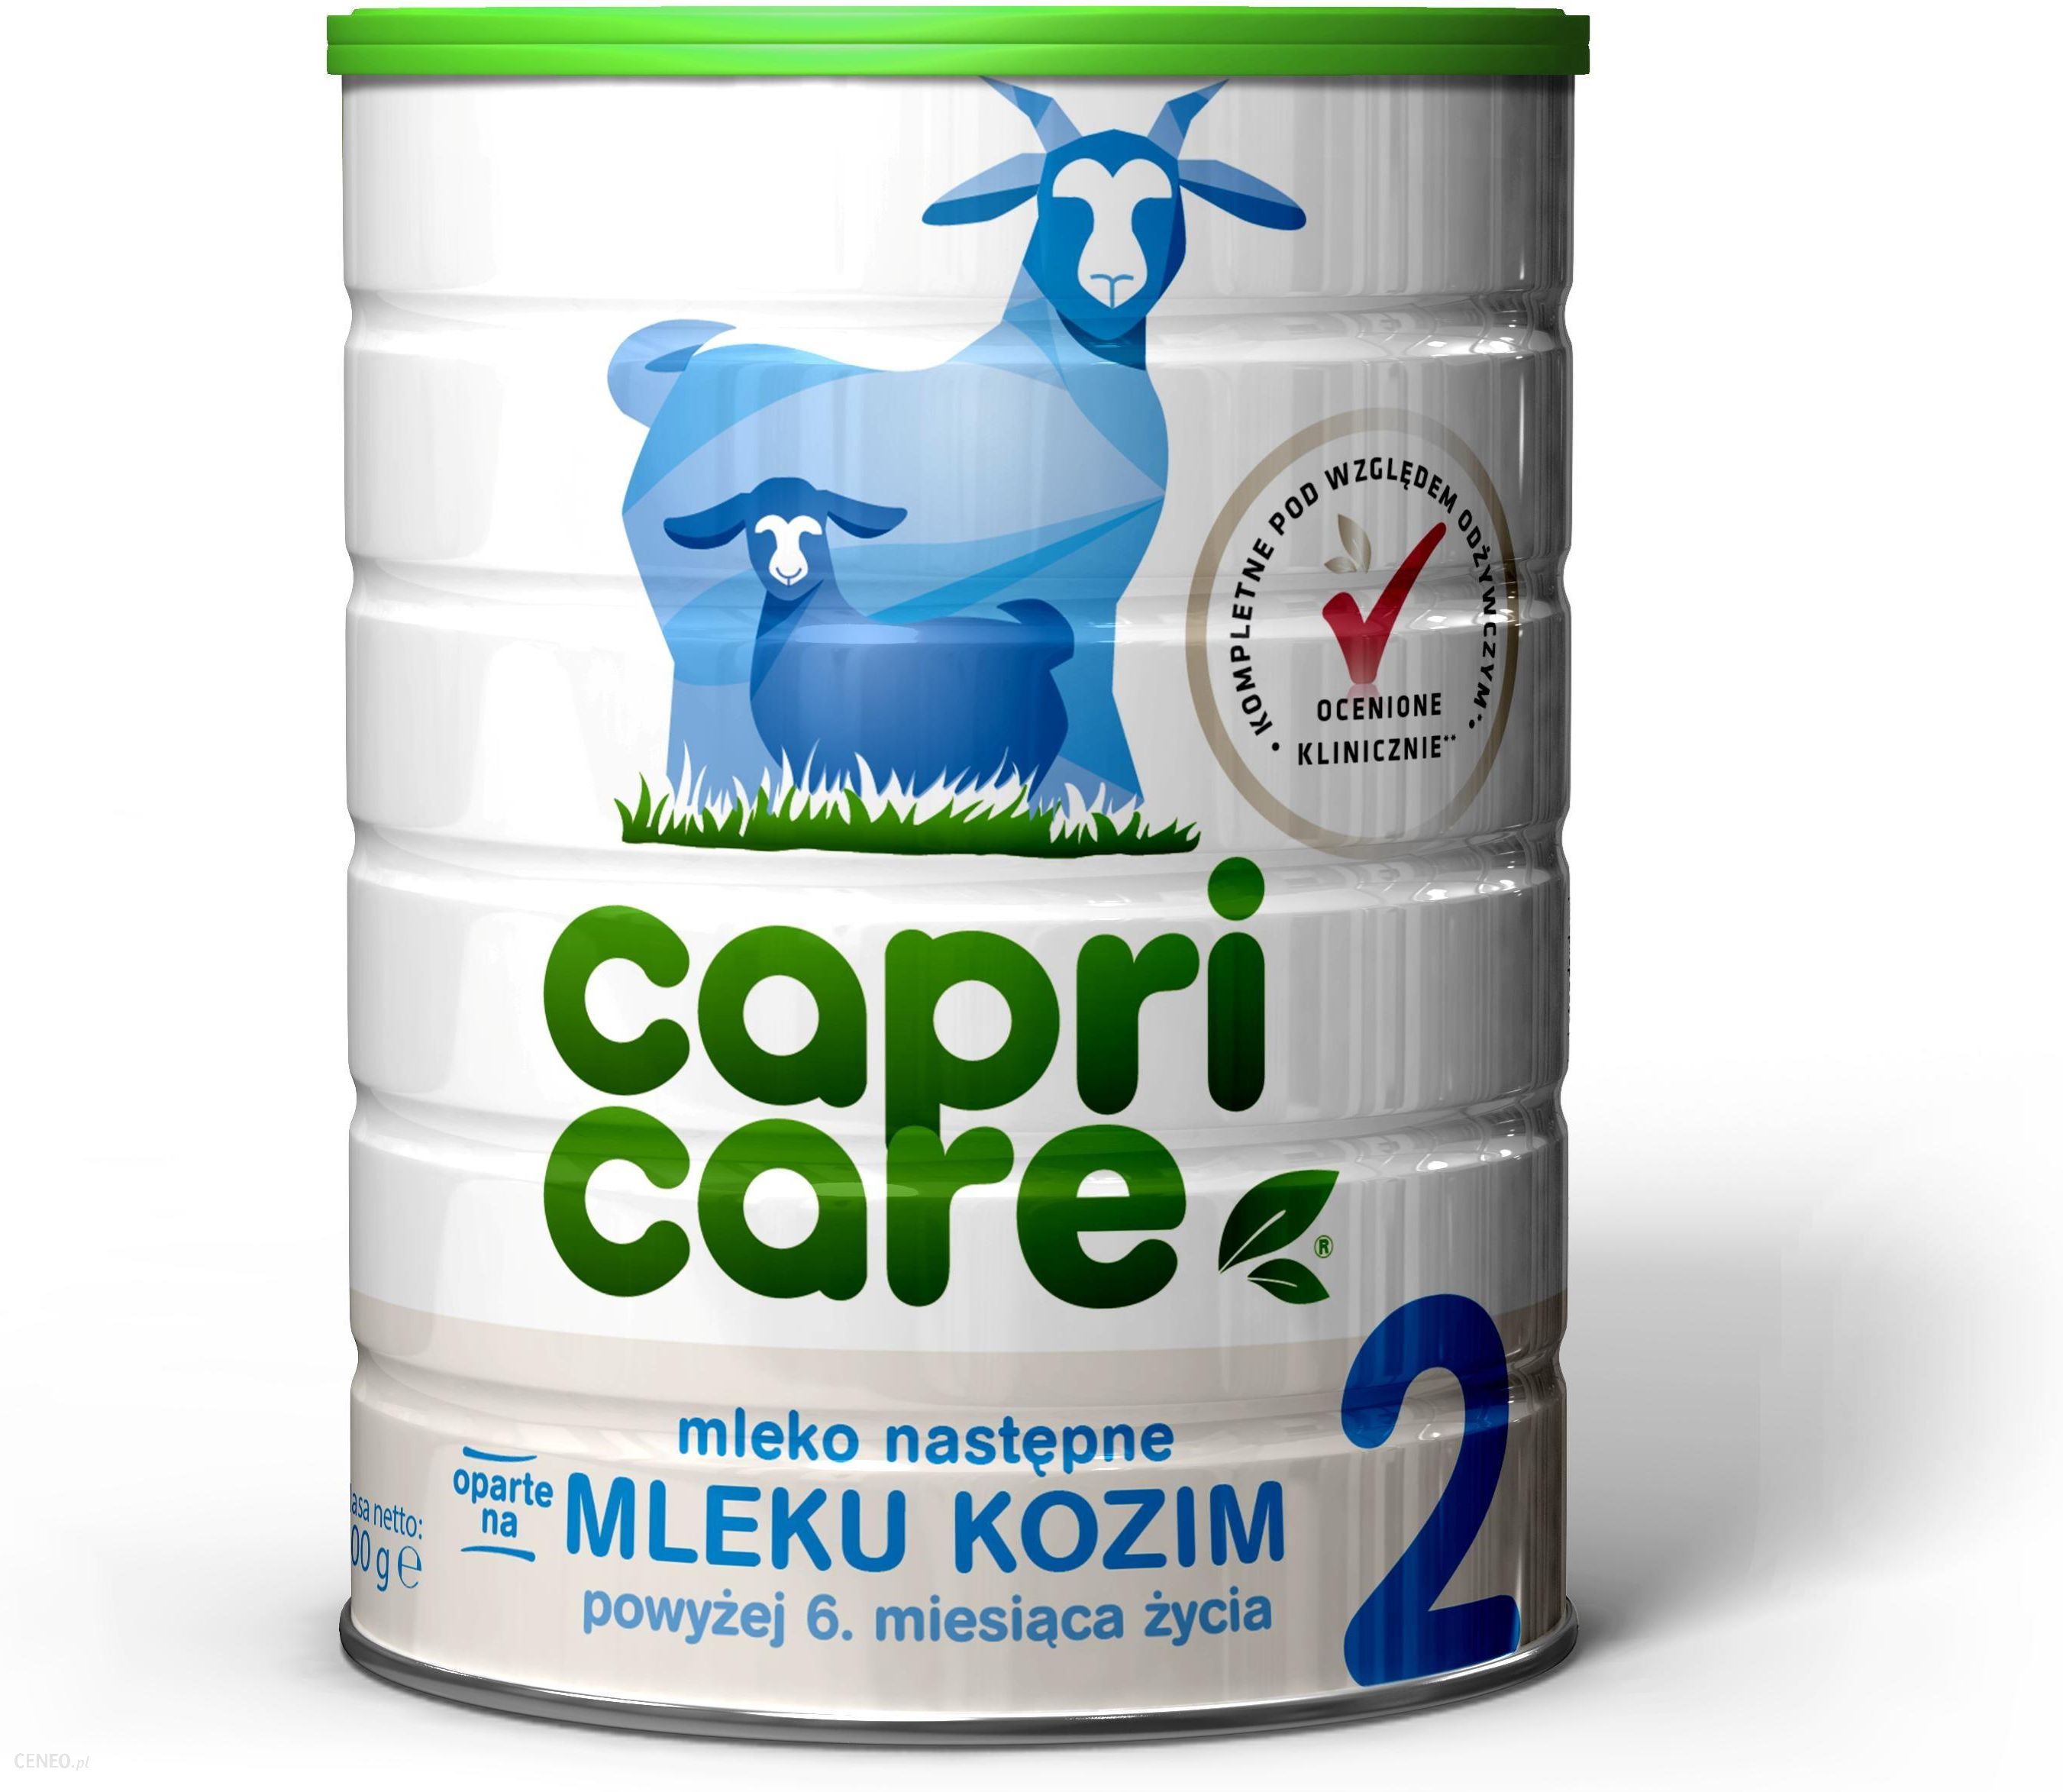 Capricare 2 mleko następne oparte na mleku kozim od 6 miesiąca, 400 g -  cena